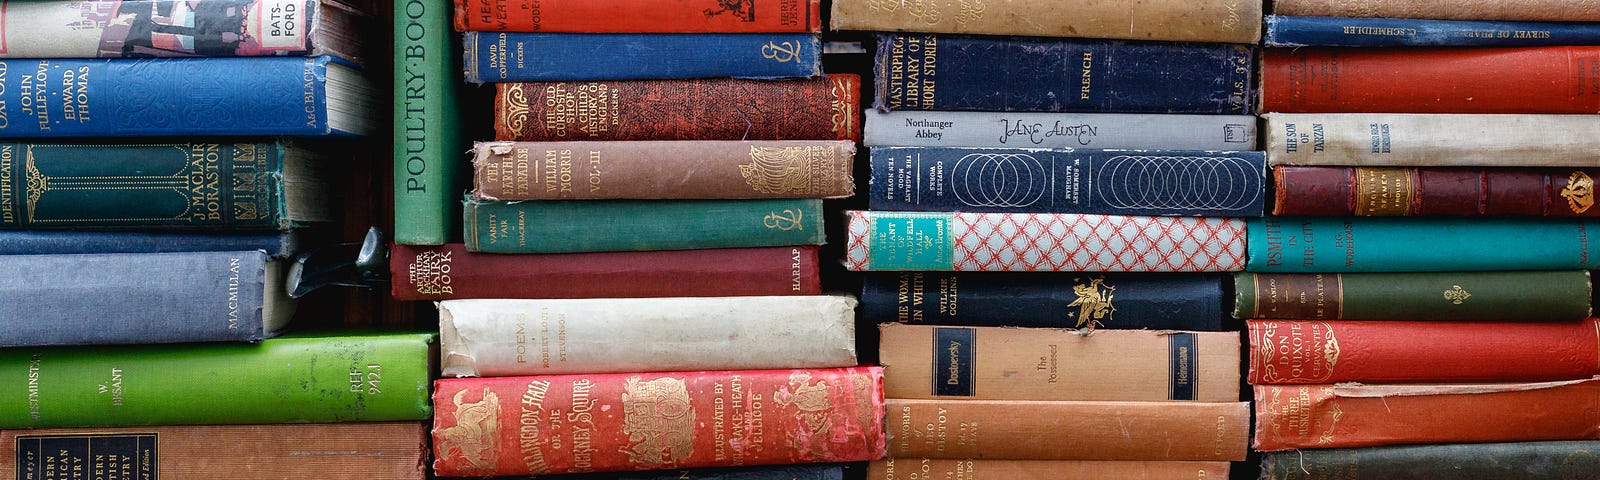 old books in stacks